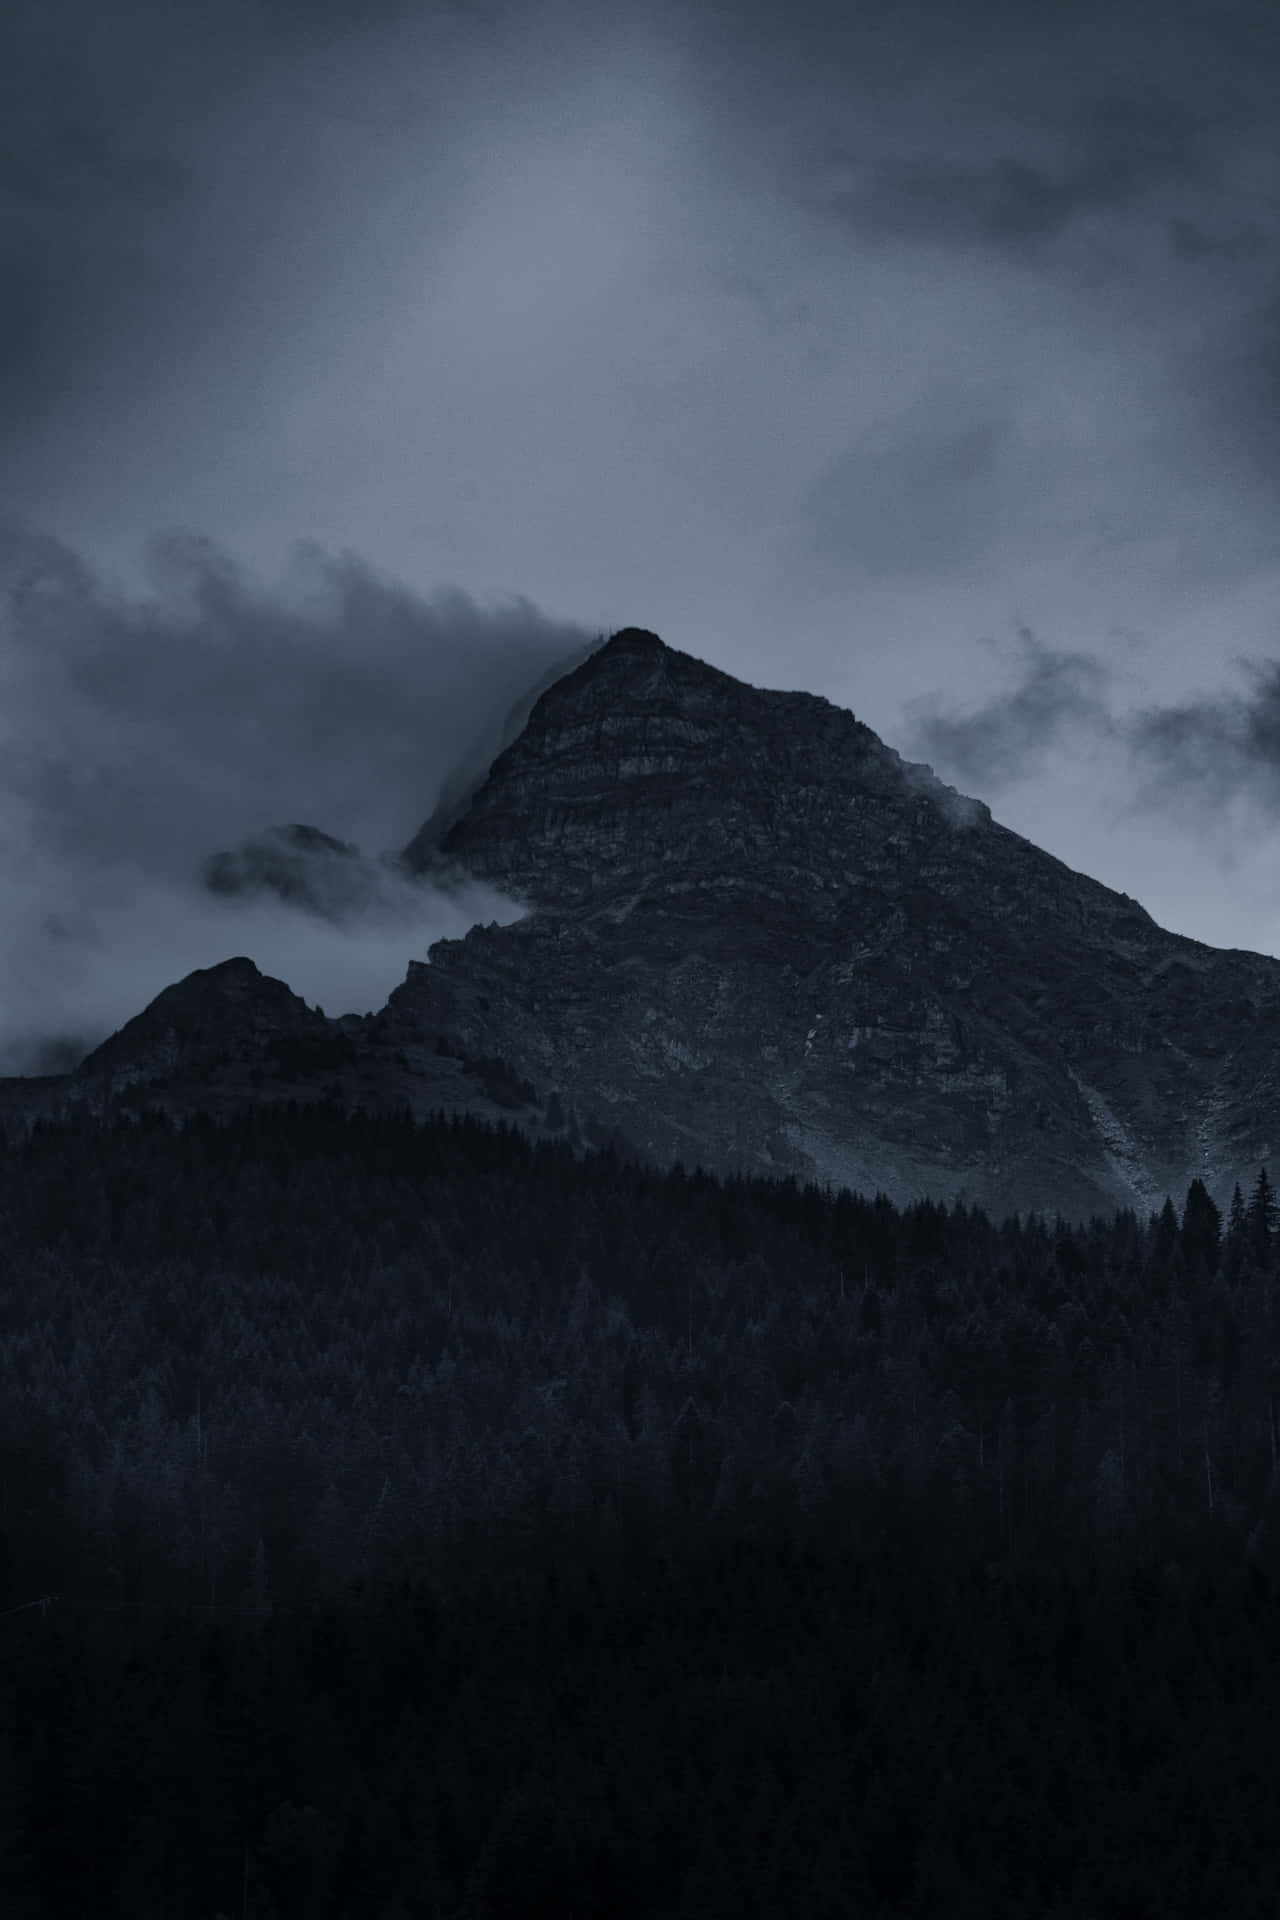 Impresionantepaisaje Oscuro De Montaña Fondo de pantalla